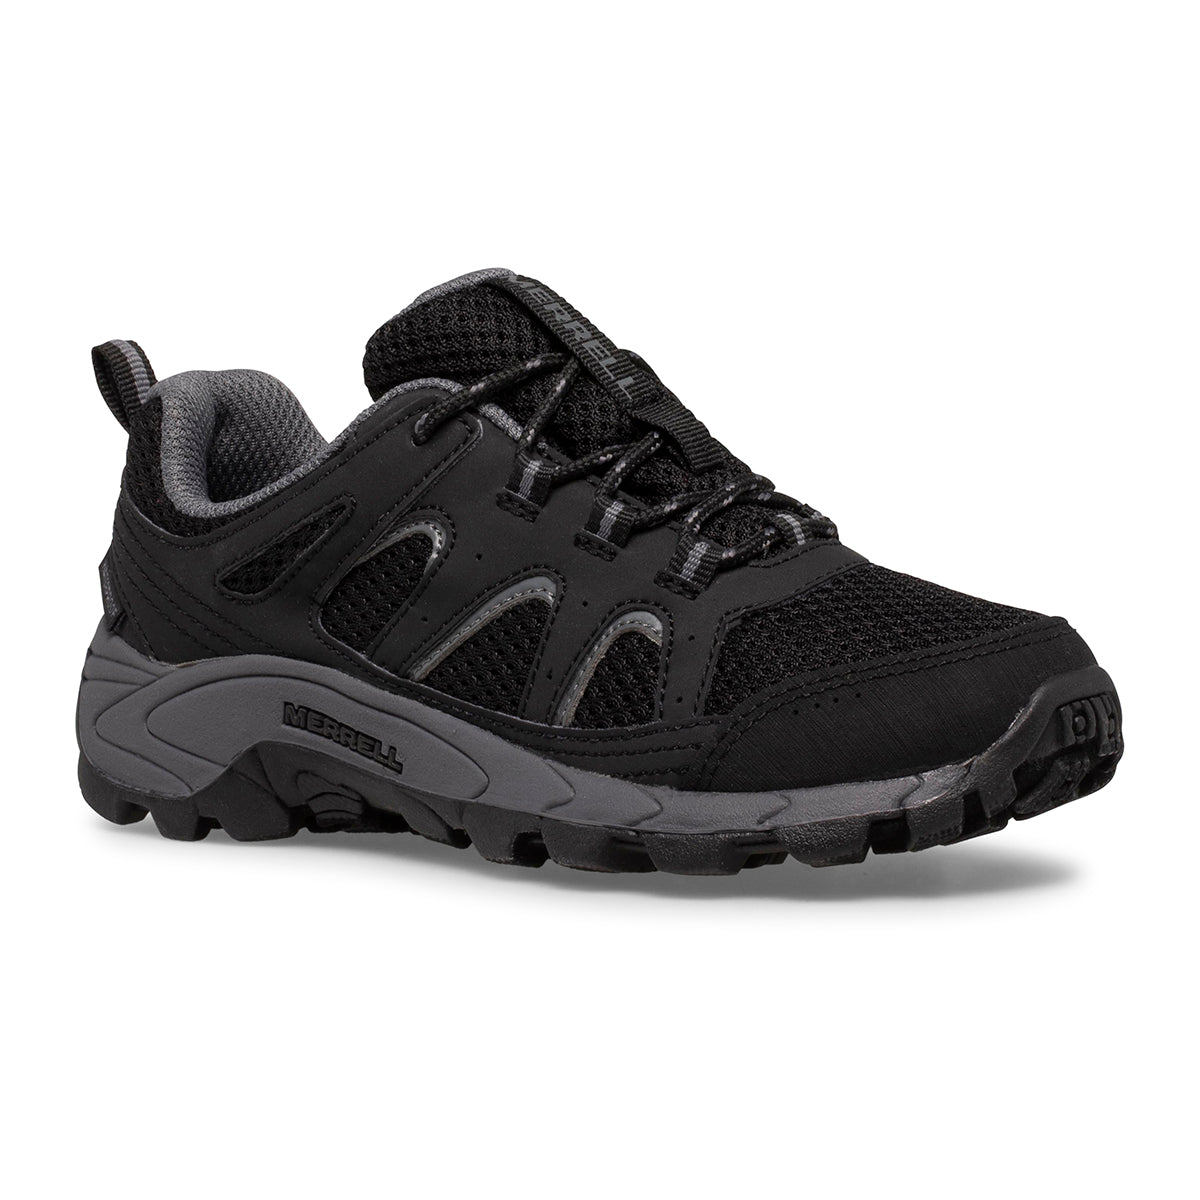 Oakcreek Low Lace Waterproof Sneaker Black/Grey